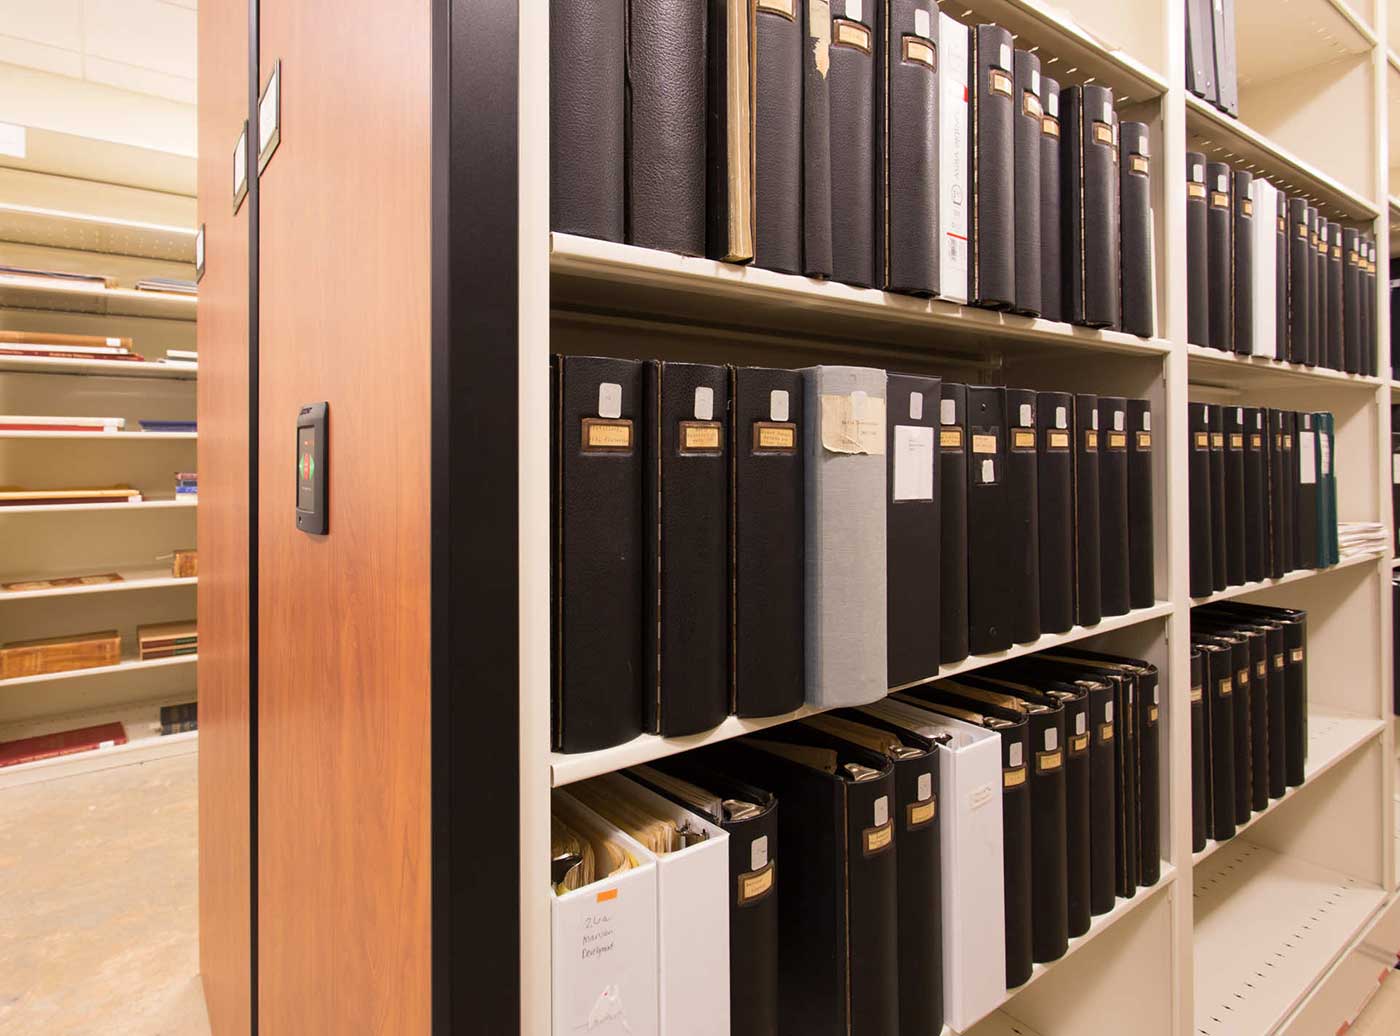 binder storage for historic paper storage